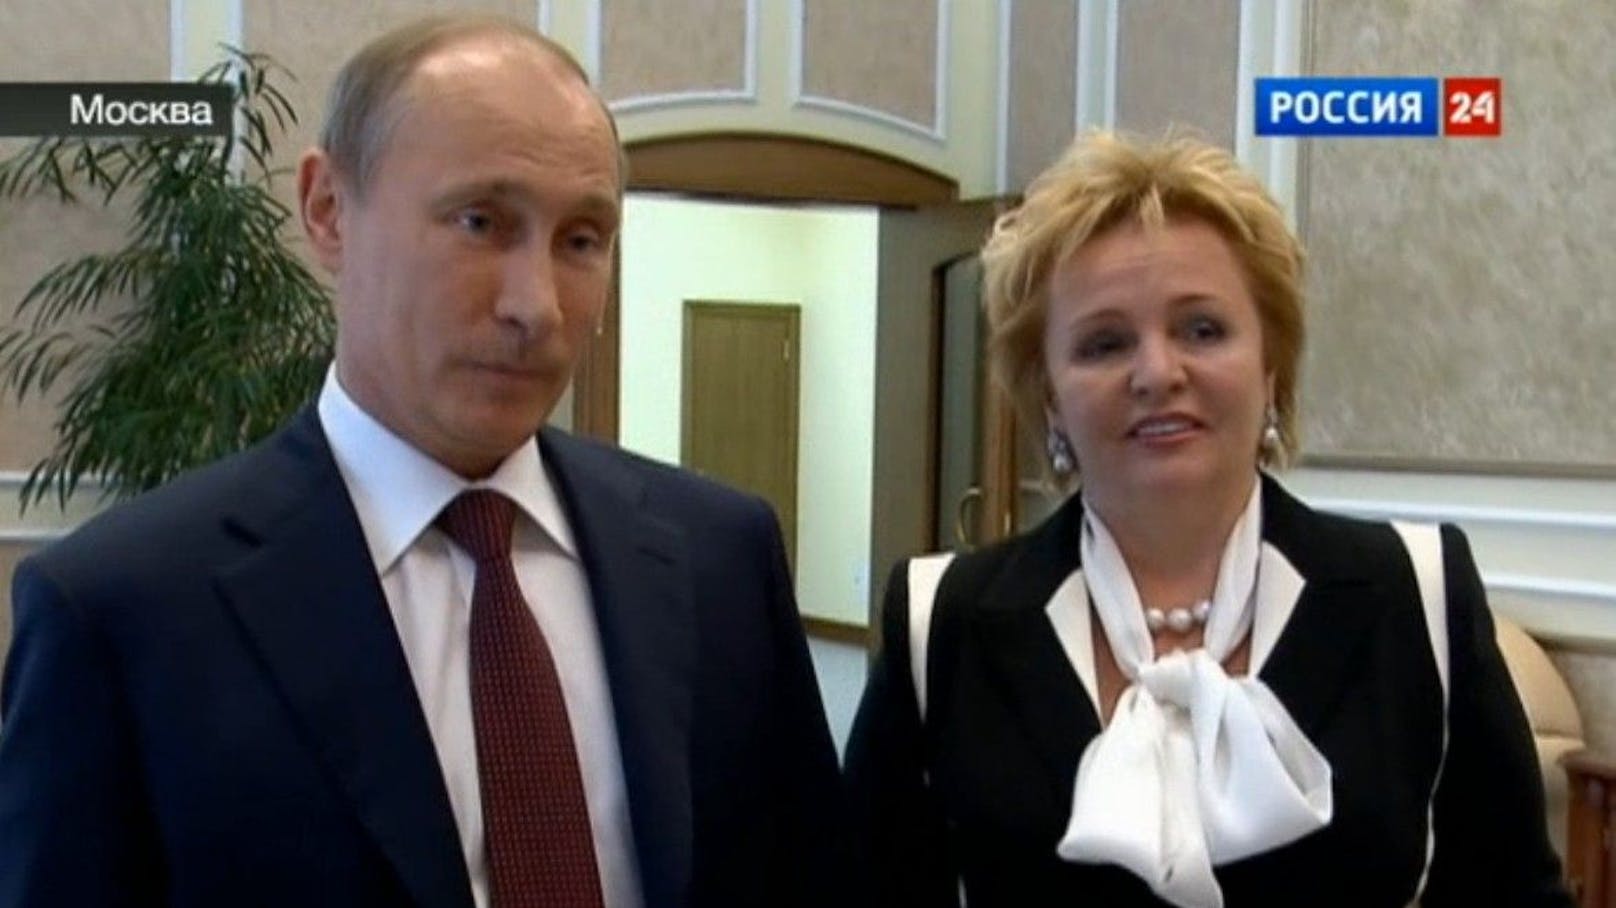 2013 trennte sich Russlands mächtigstes Ehepaar. Offizielle Begründung: Das Präsidentenamt nehme zu viel Zeit in Anspruch.